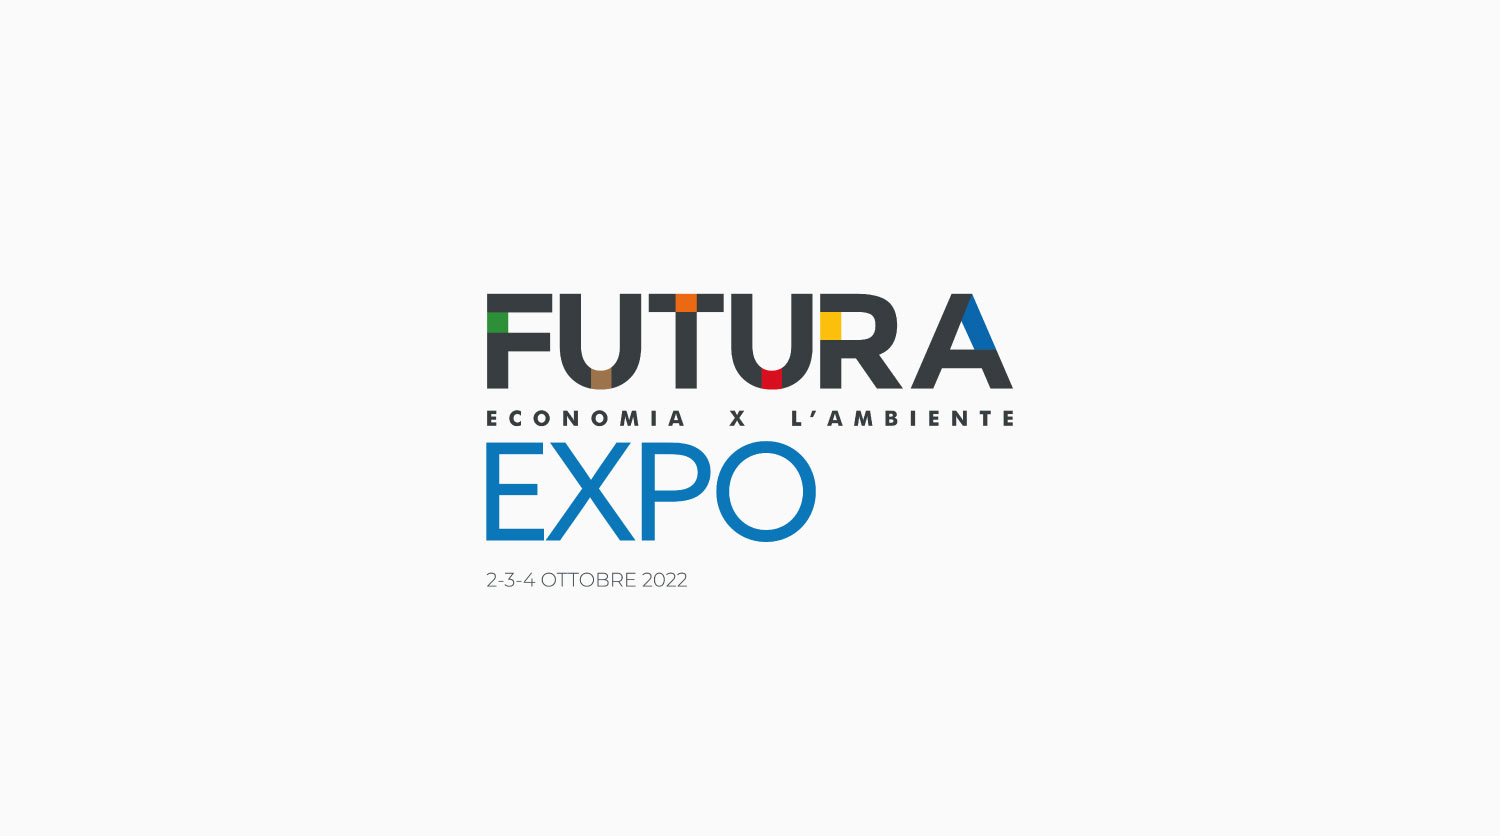 FUTURA EXPO: l’acciaio verde si fa con il biogas – Presentato il progetto Green Metals nato dalla collaborazione tra agricoltura e industria nella sostenibilità